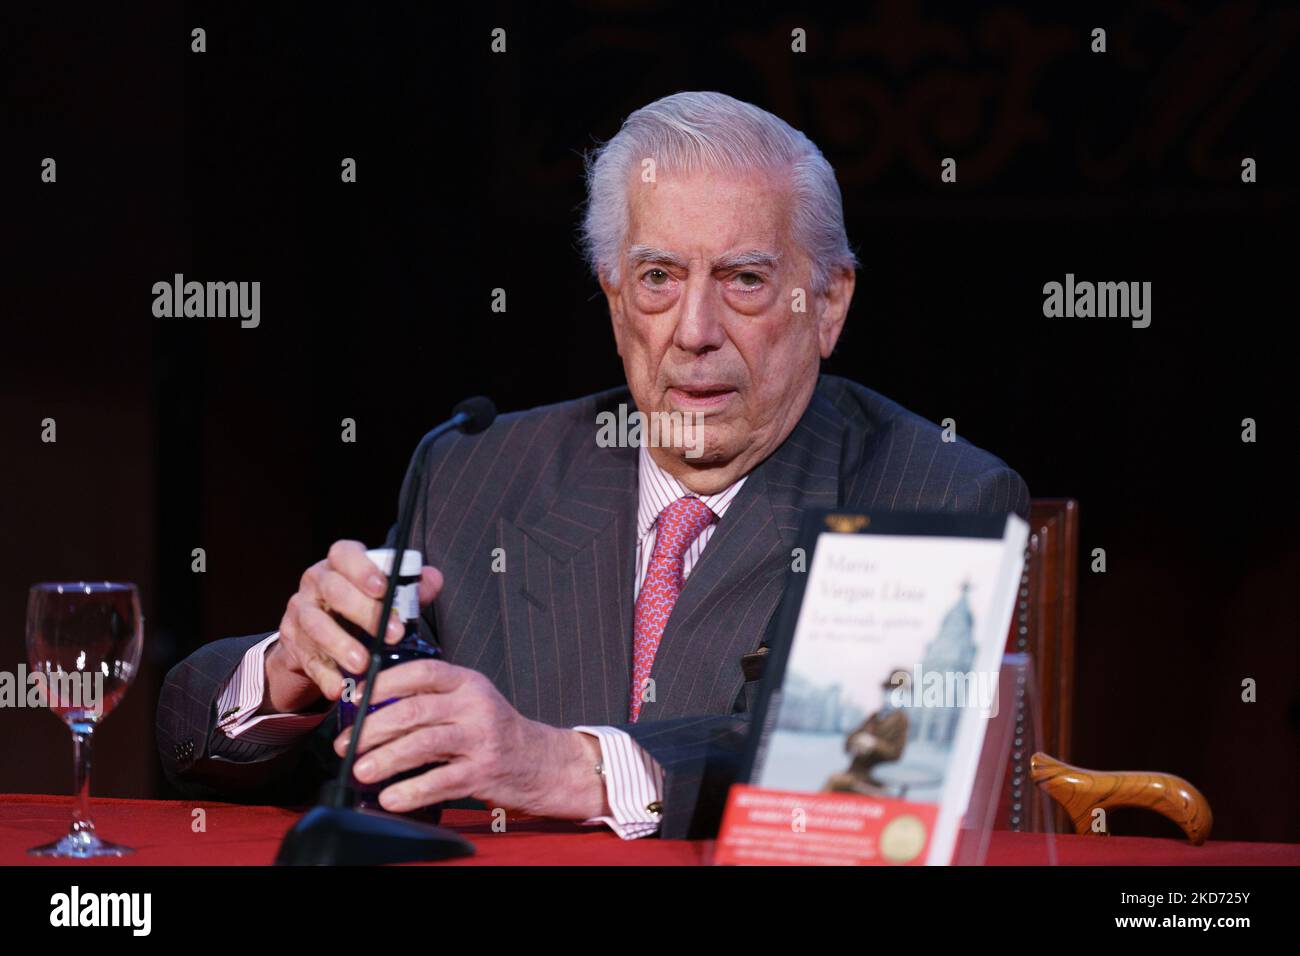 The writer, politician and journalist, Mario Vargas Llosa, presents his book 'La mirada quieta (de Perez Galdos)', at the Ateneo de Madrid, on April 7, 2022, in Madrid, Spain. (Photo by Oscar Gonzalez/NurPhoto) Stock Photo